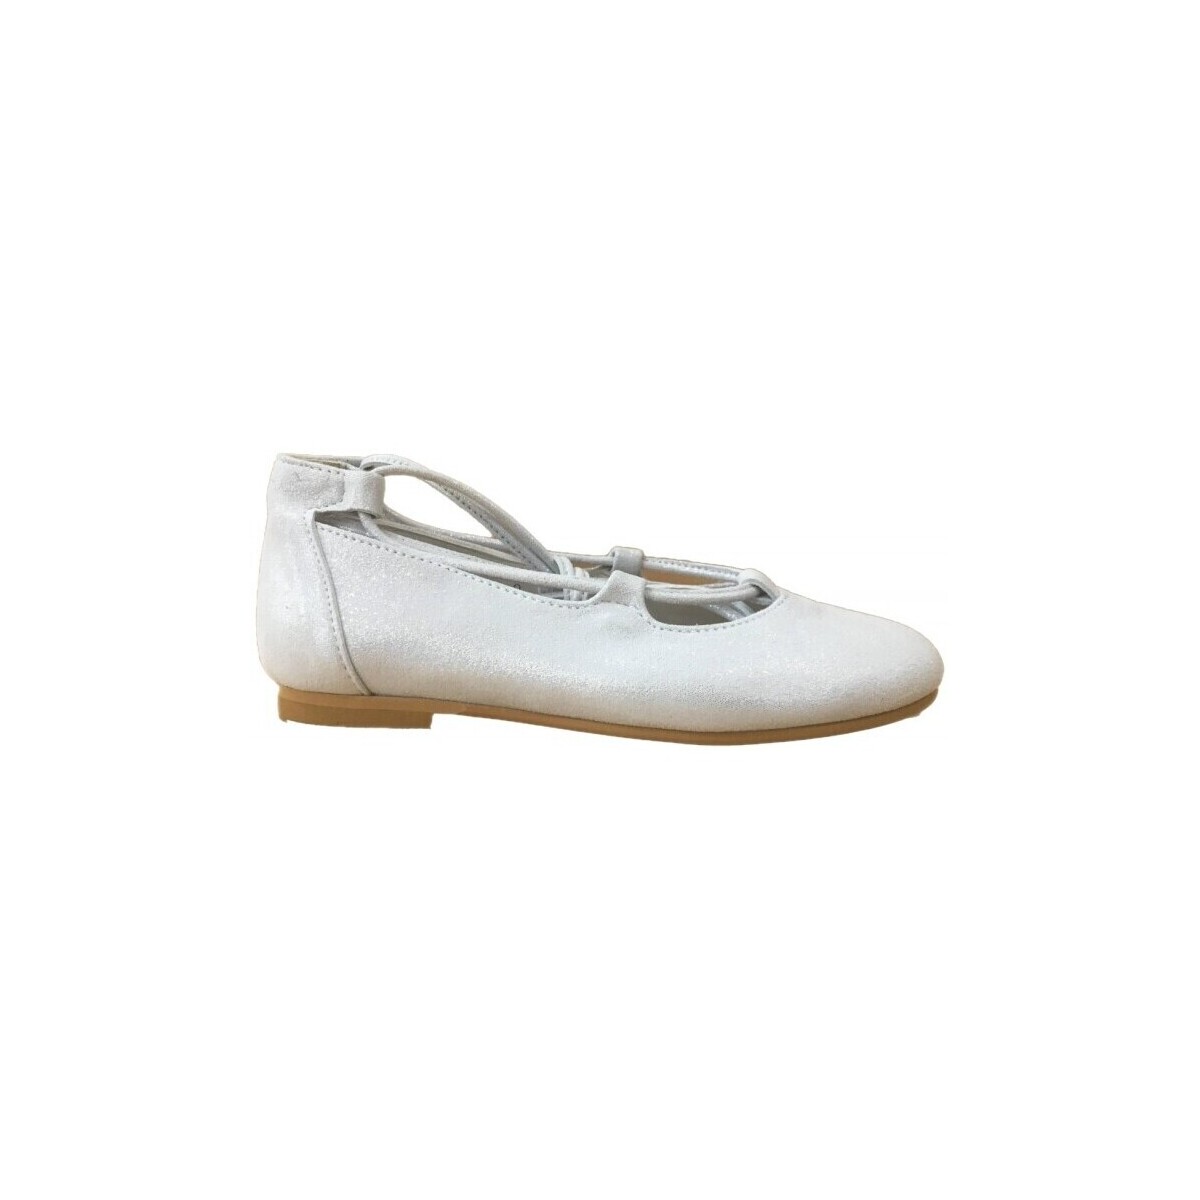 Obuća Djevojčica Balerinke i Mary Jane cipele Colores 26227-18 Bijela